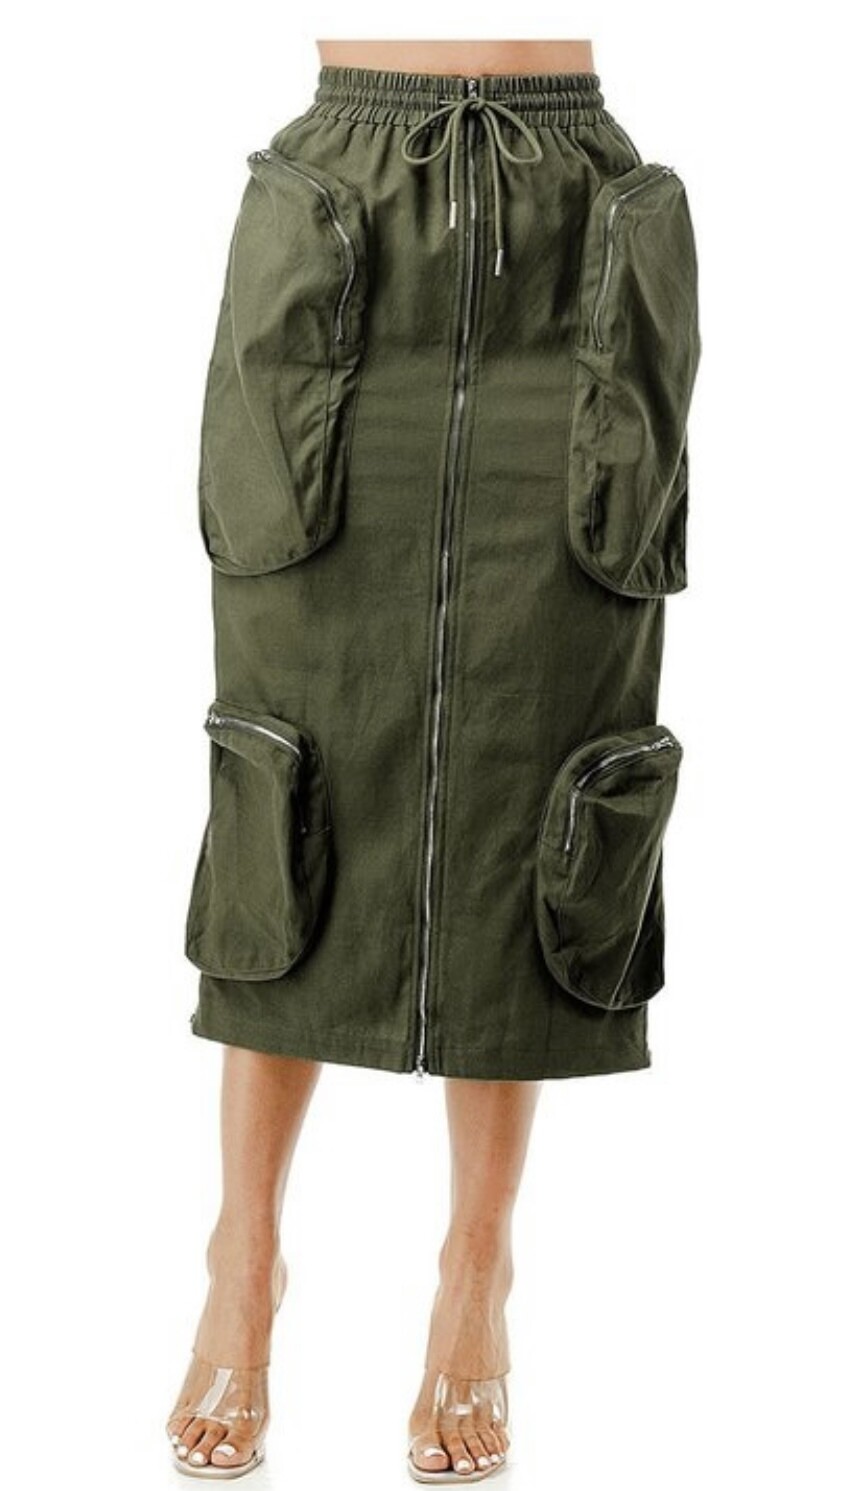 Olive Cargo Skirt